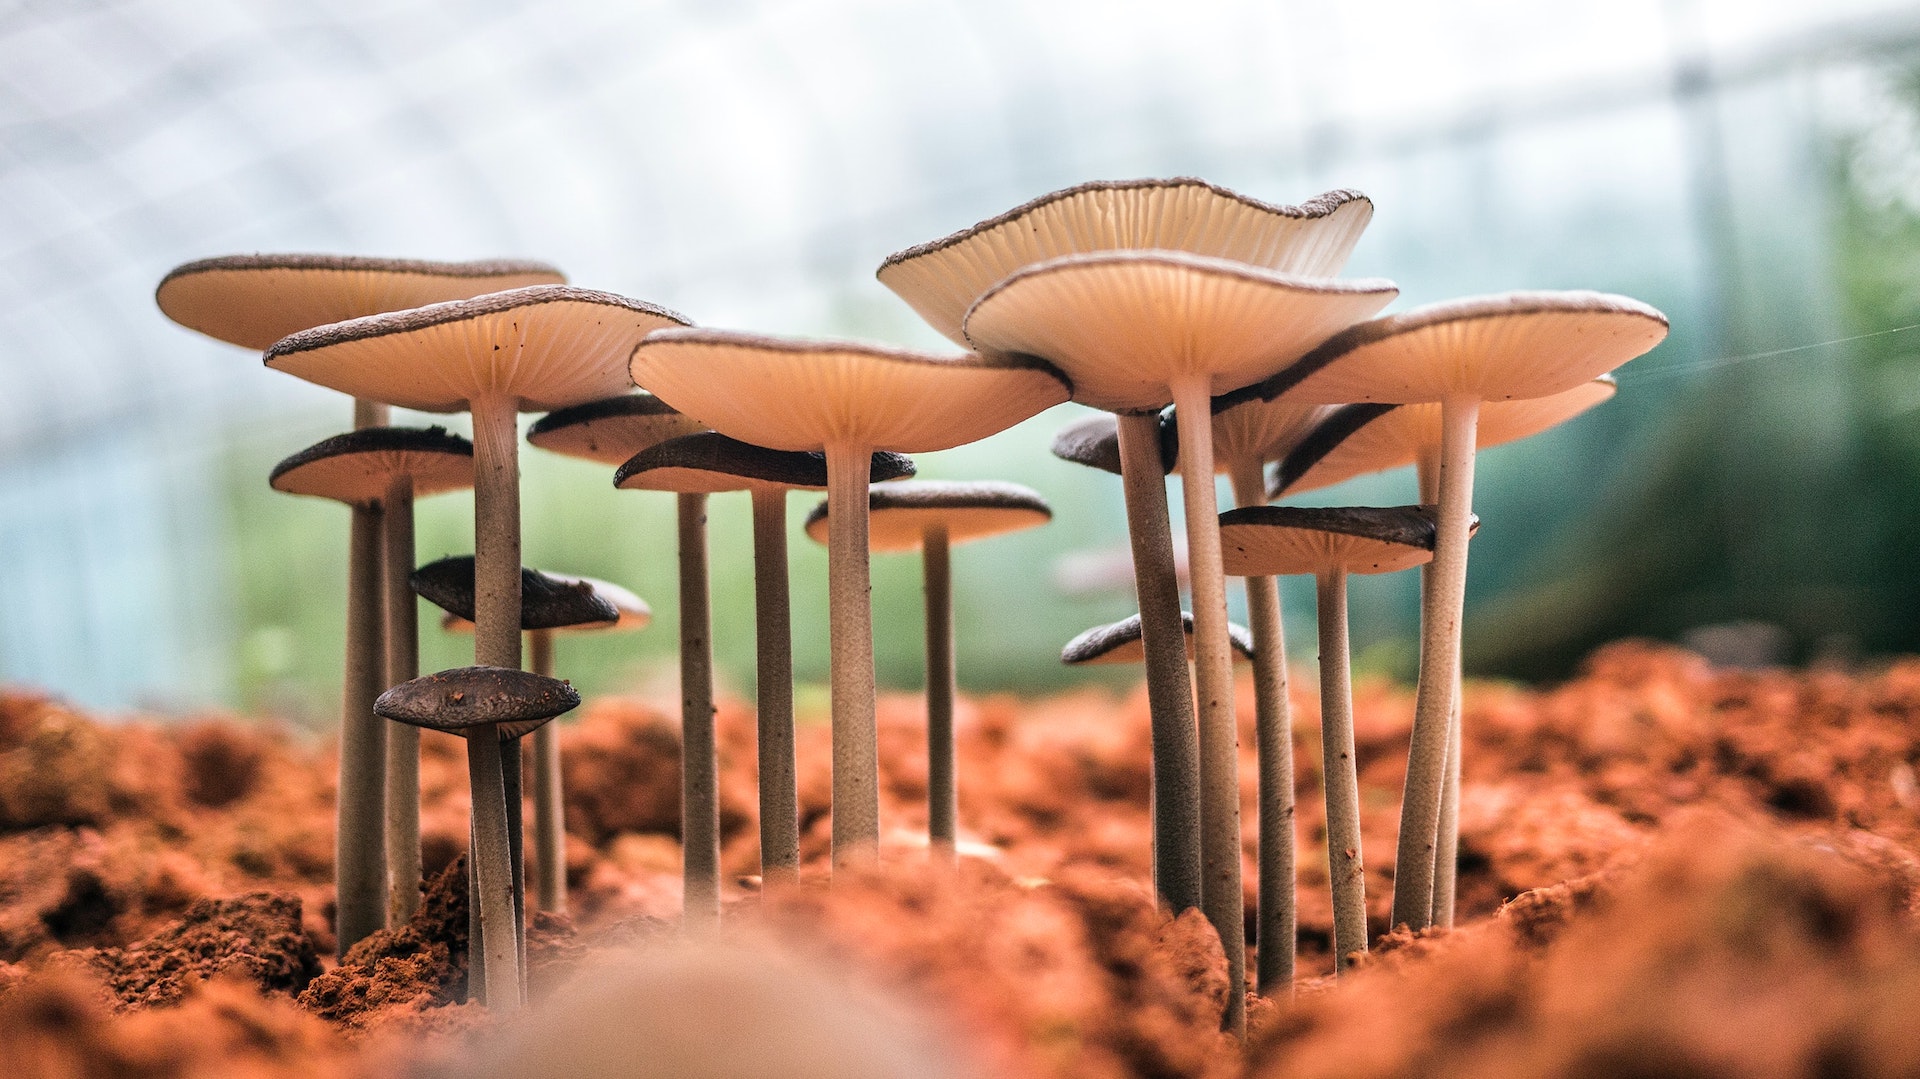 mushrooms growing outside